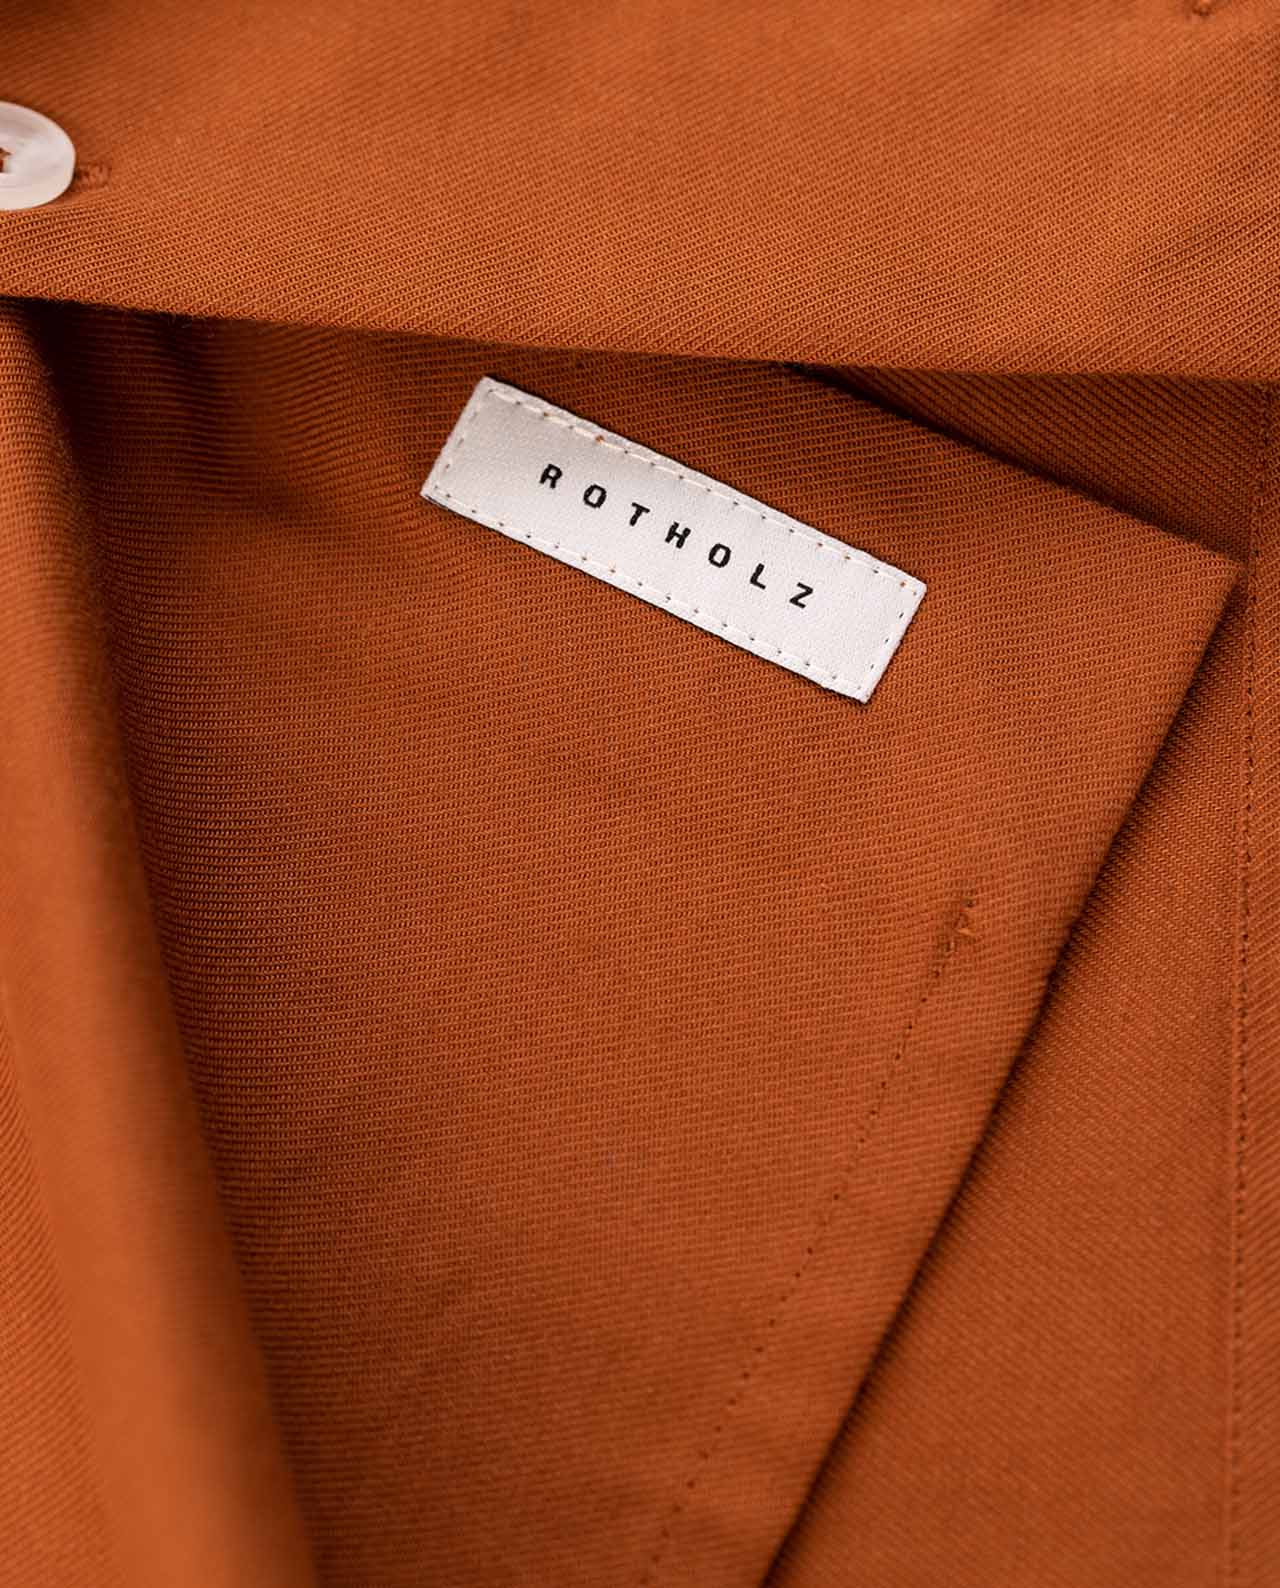 marché commun rotholz chemise homme éco-responsable droite coton biologique orange rouille